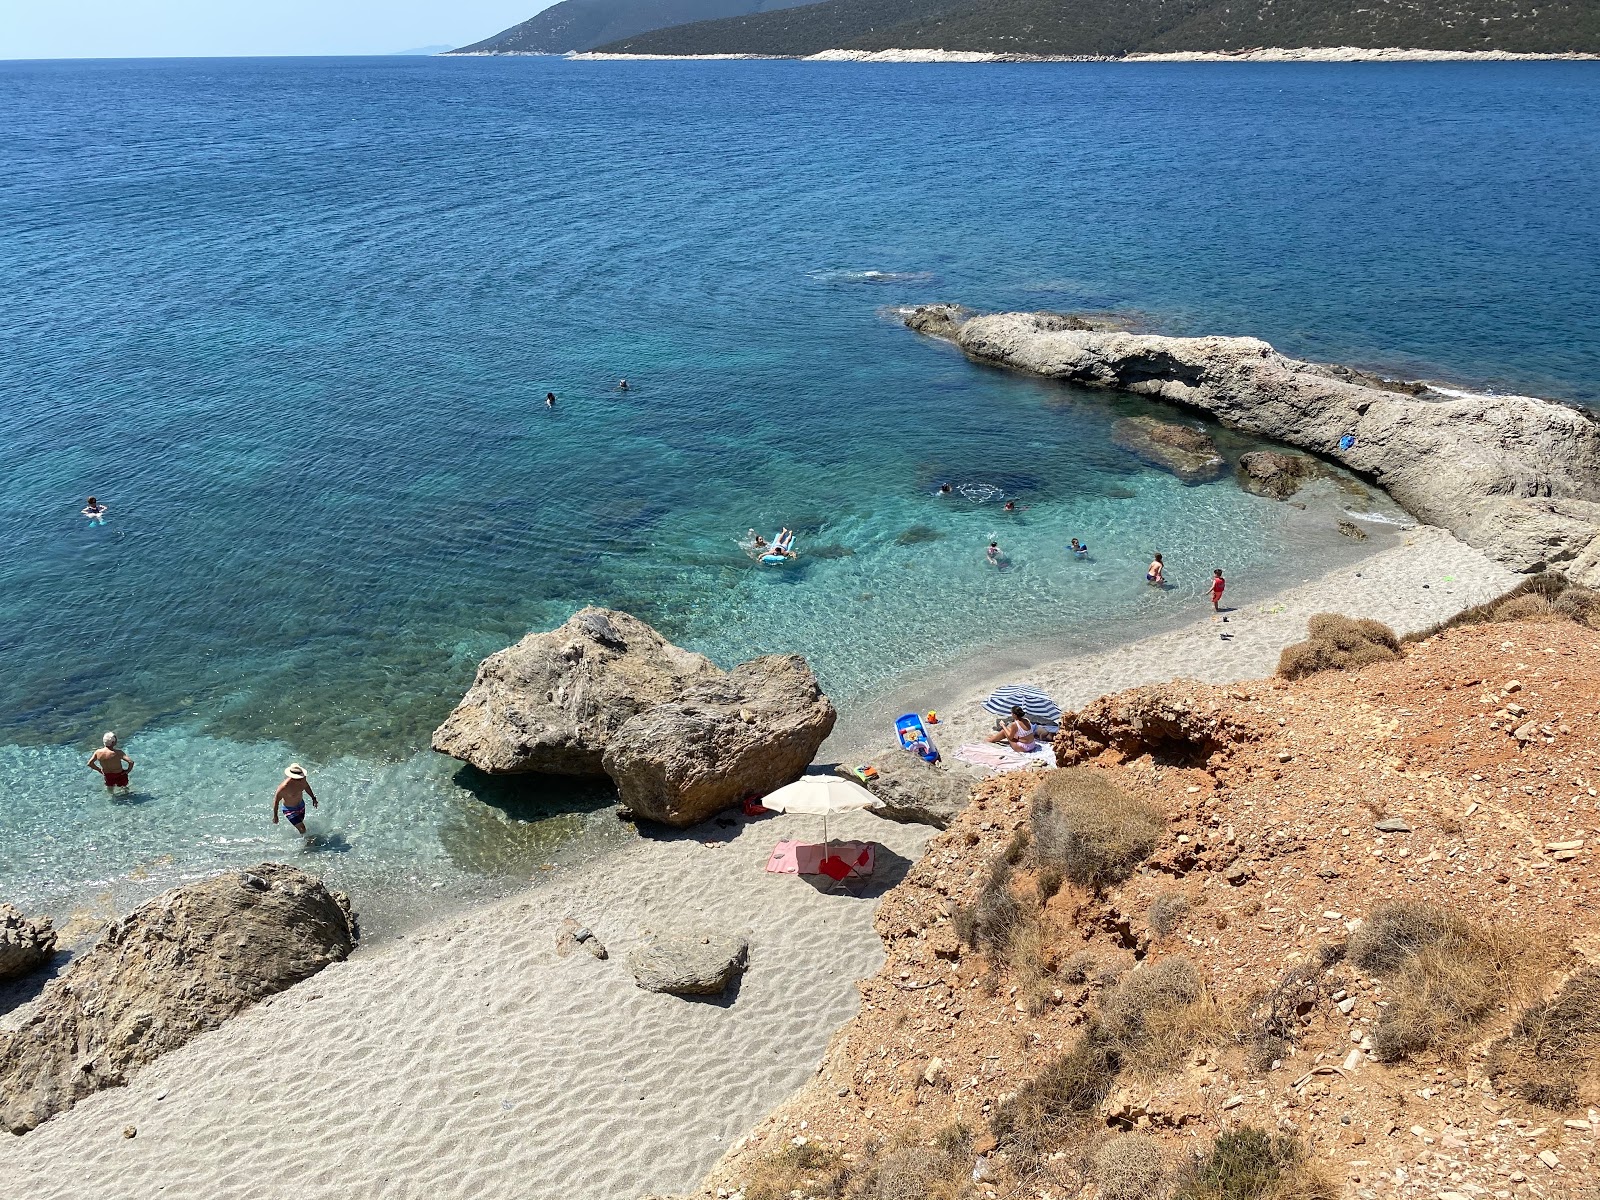 Zastani beach'in fotoğrafı parlak kabuk kumu yüzey ile